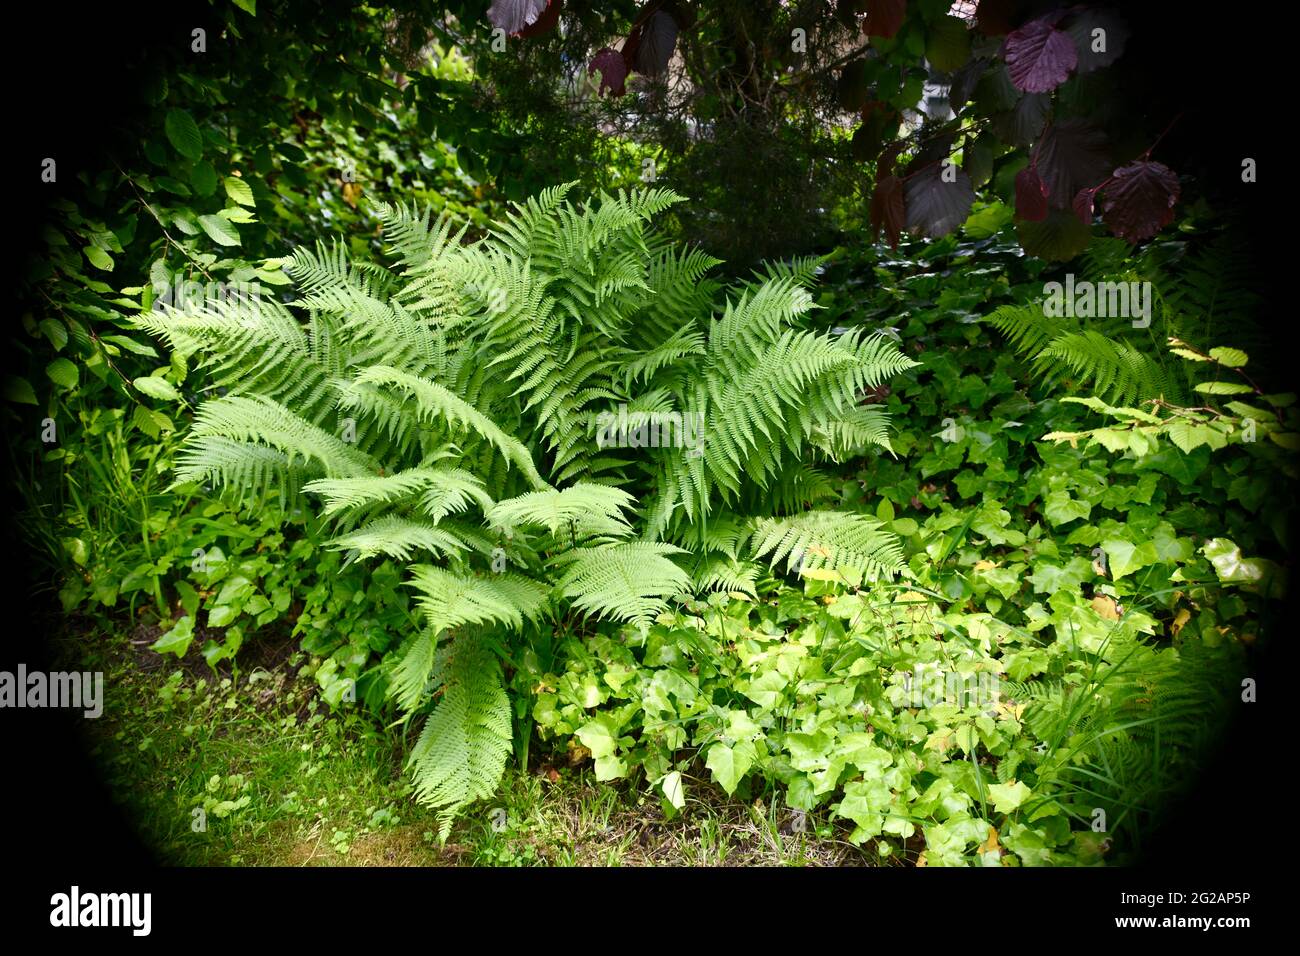 Spot auf Dryopteris filimas - Wurmfarn -und andere Grünpflanzen zur Gartendekoration im Schatten Foto Stock